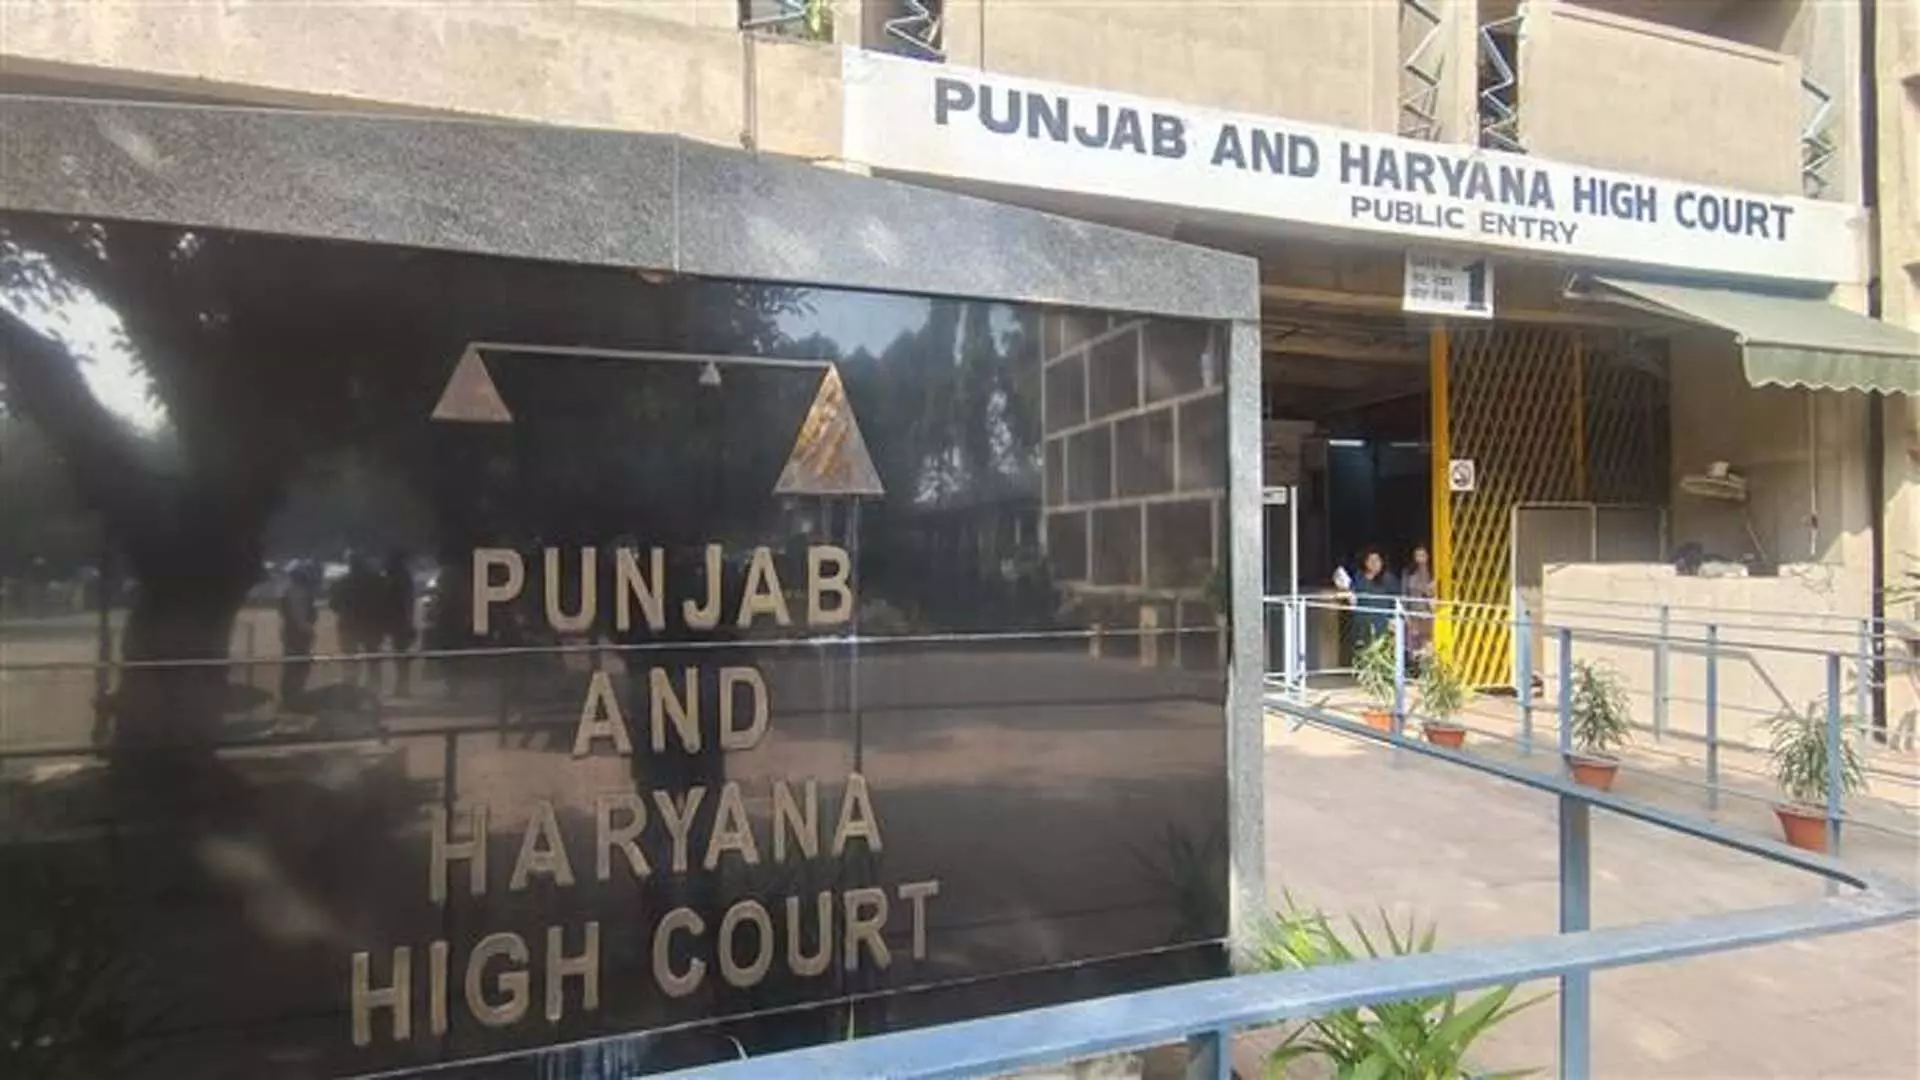 HC ने व्यावसायिक मास्टर की नियुक्ति का निर्देश दिया, पंजाब पर 50,000 रुपये का जुर्माना लगाया